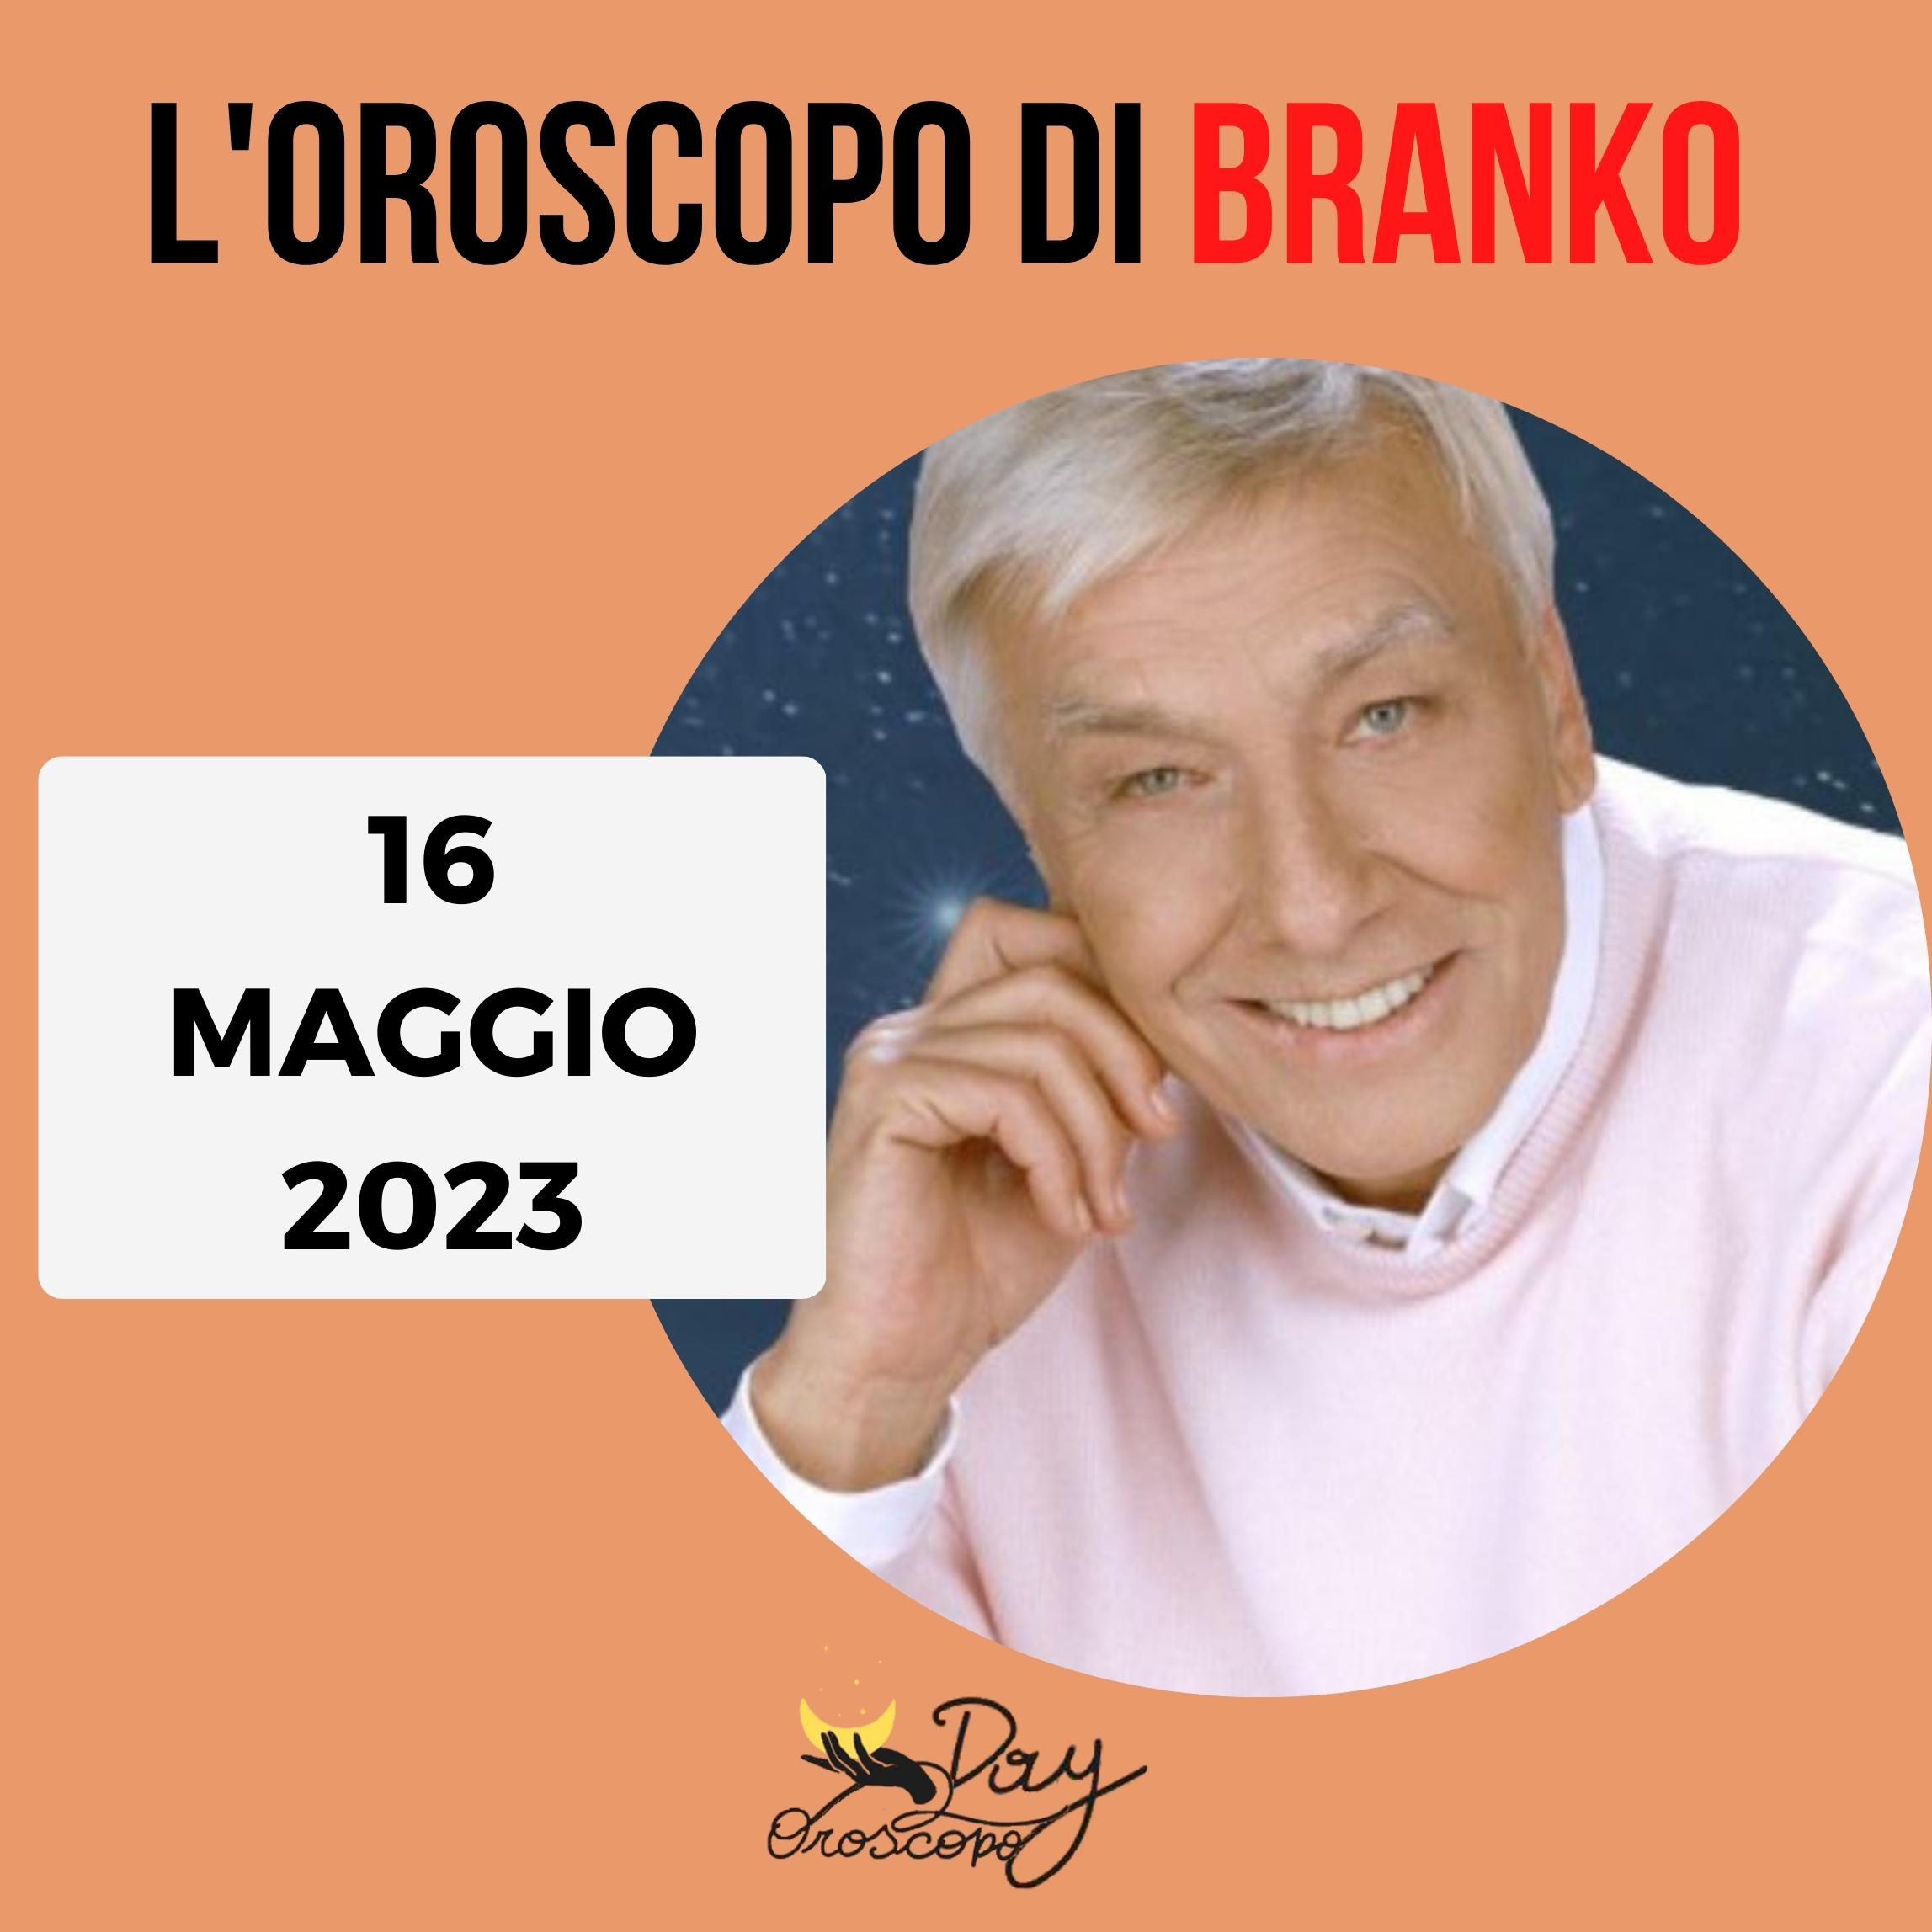 Oroscopo oggi domani Branko 16 maggio 2023